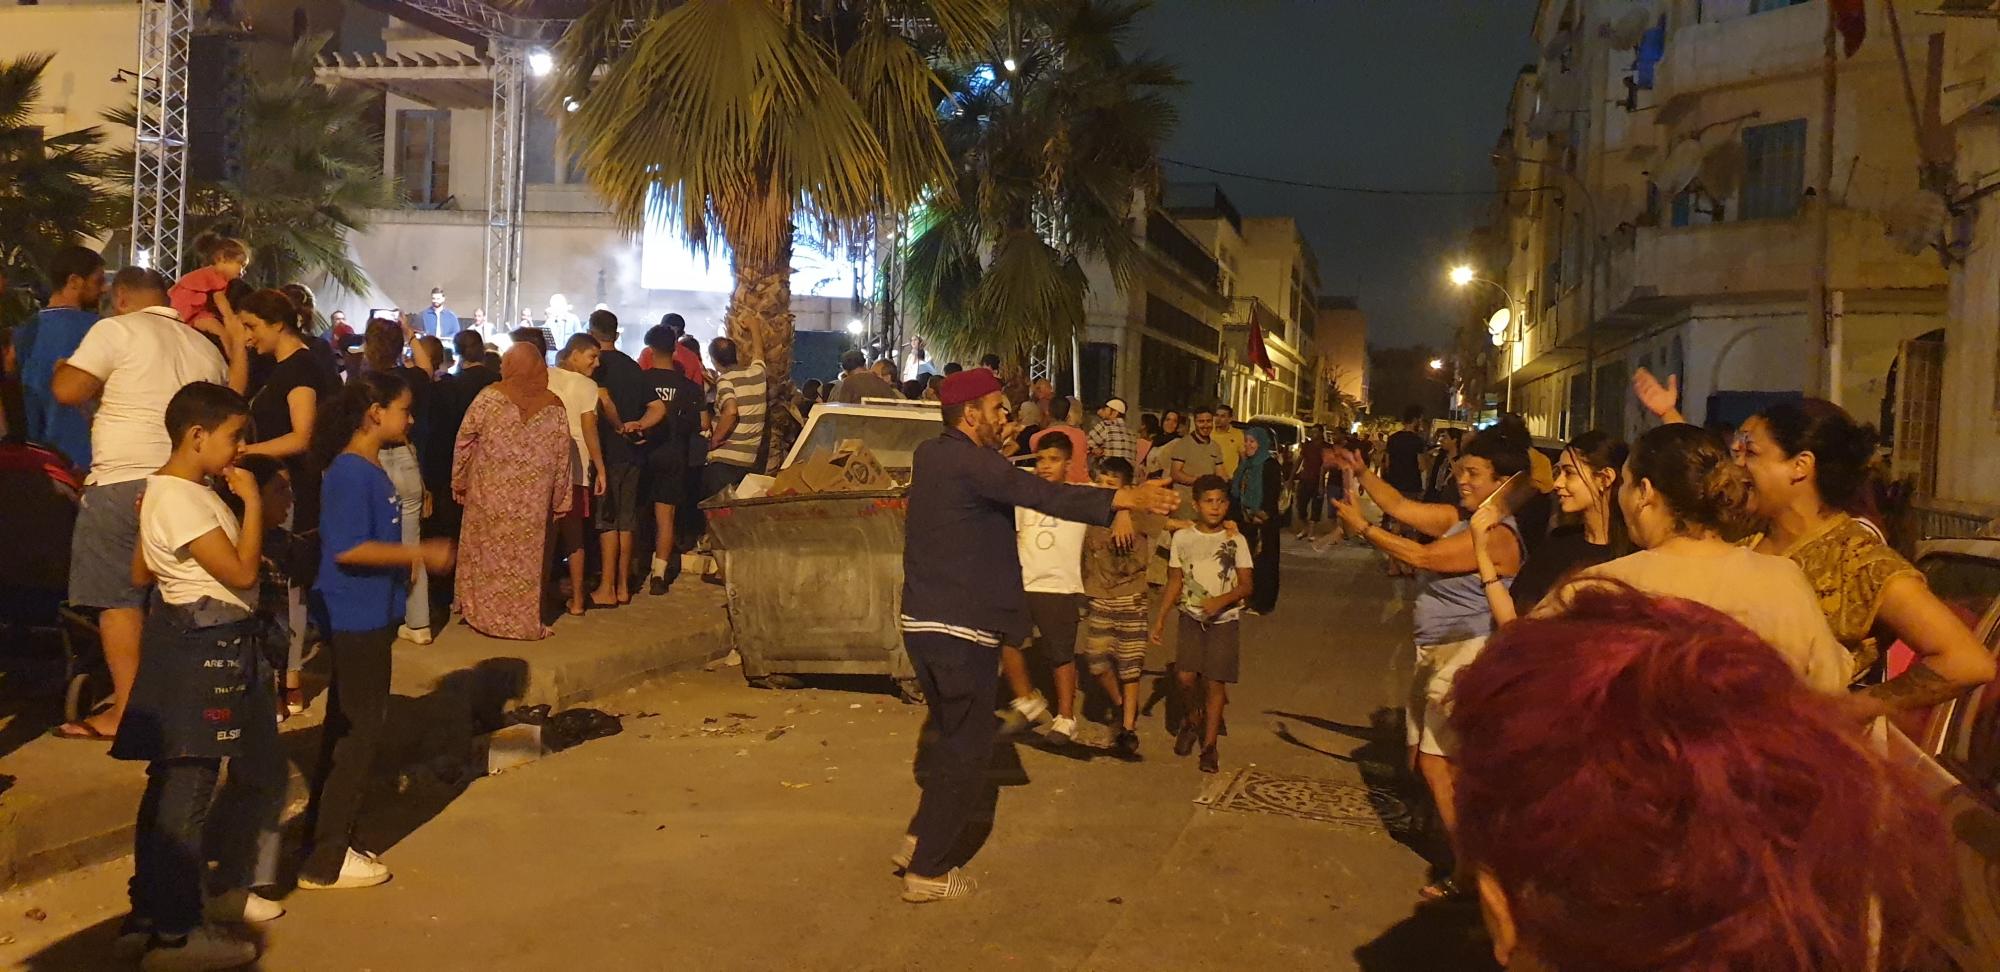 Menschen auf den Straßen tanzen und klatschen zur Musik. Das Dream City-Festival begeistert die Stadtbewohner:innen von Tunis ebenso wie internationale Besucher:innen. Foto: Vanessa Barisch.